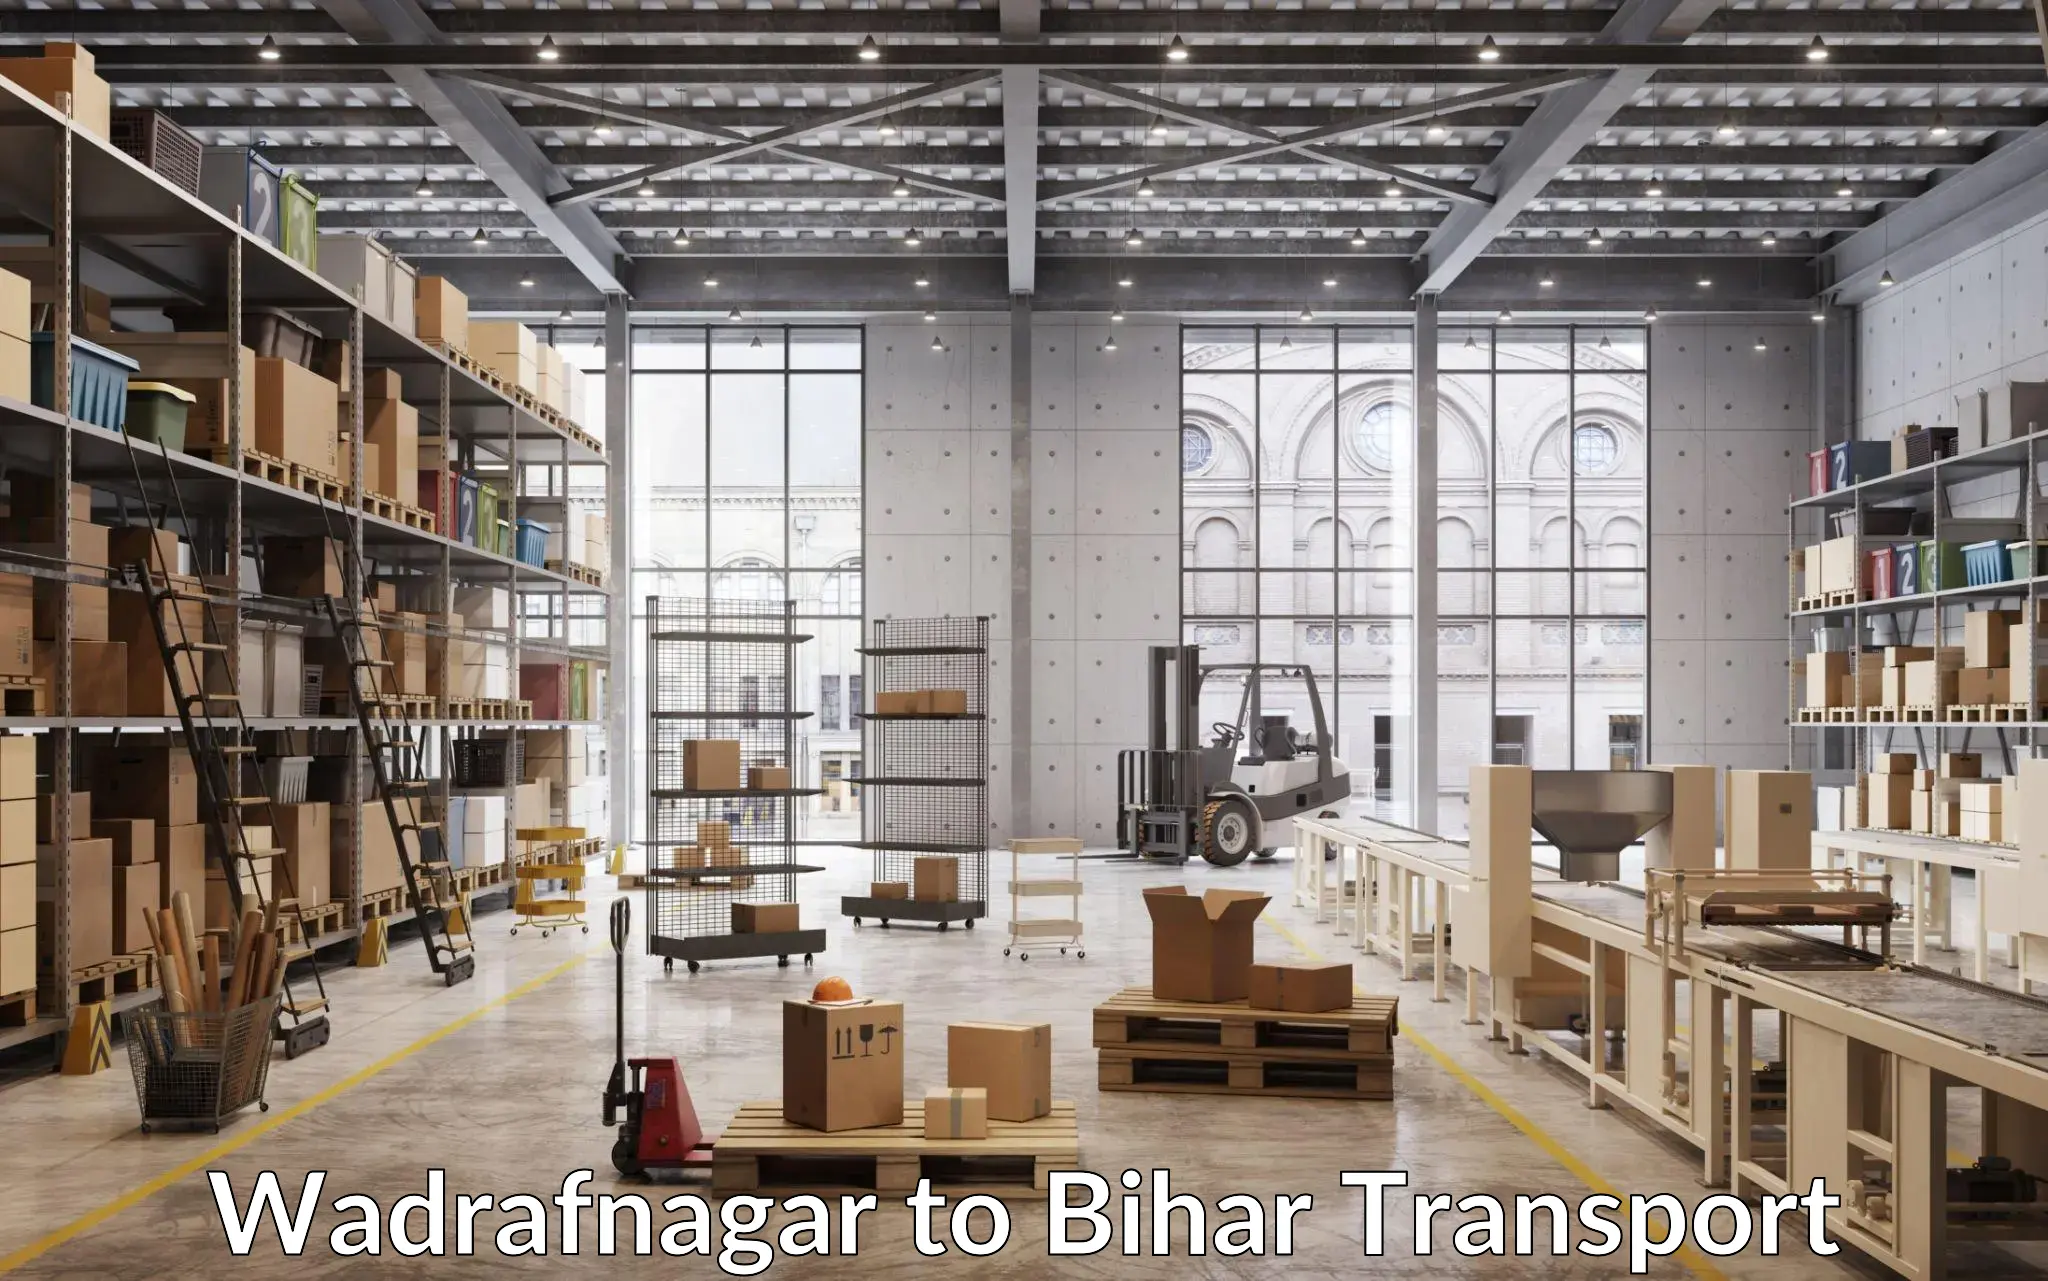 Transport in sharing Wadrafnagar to Kochas